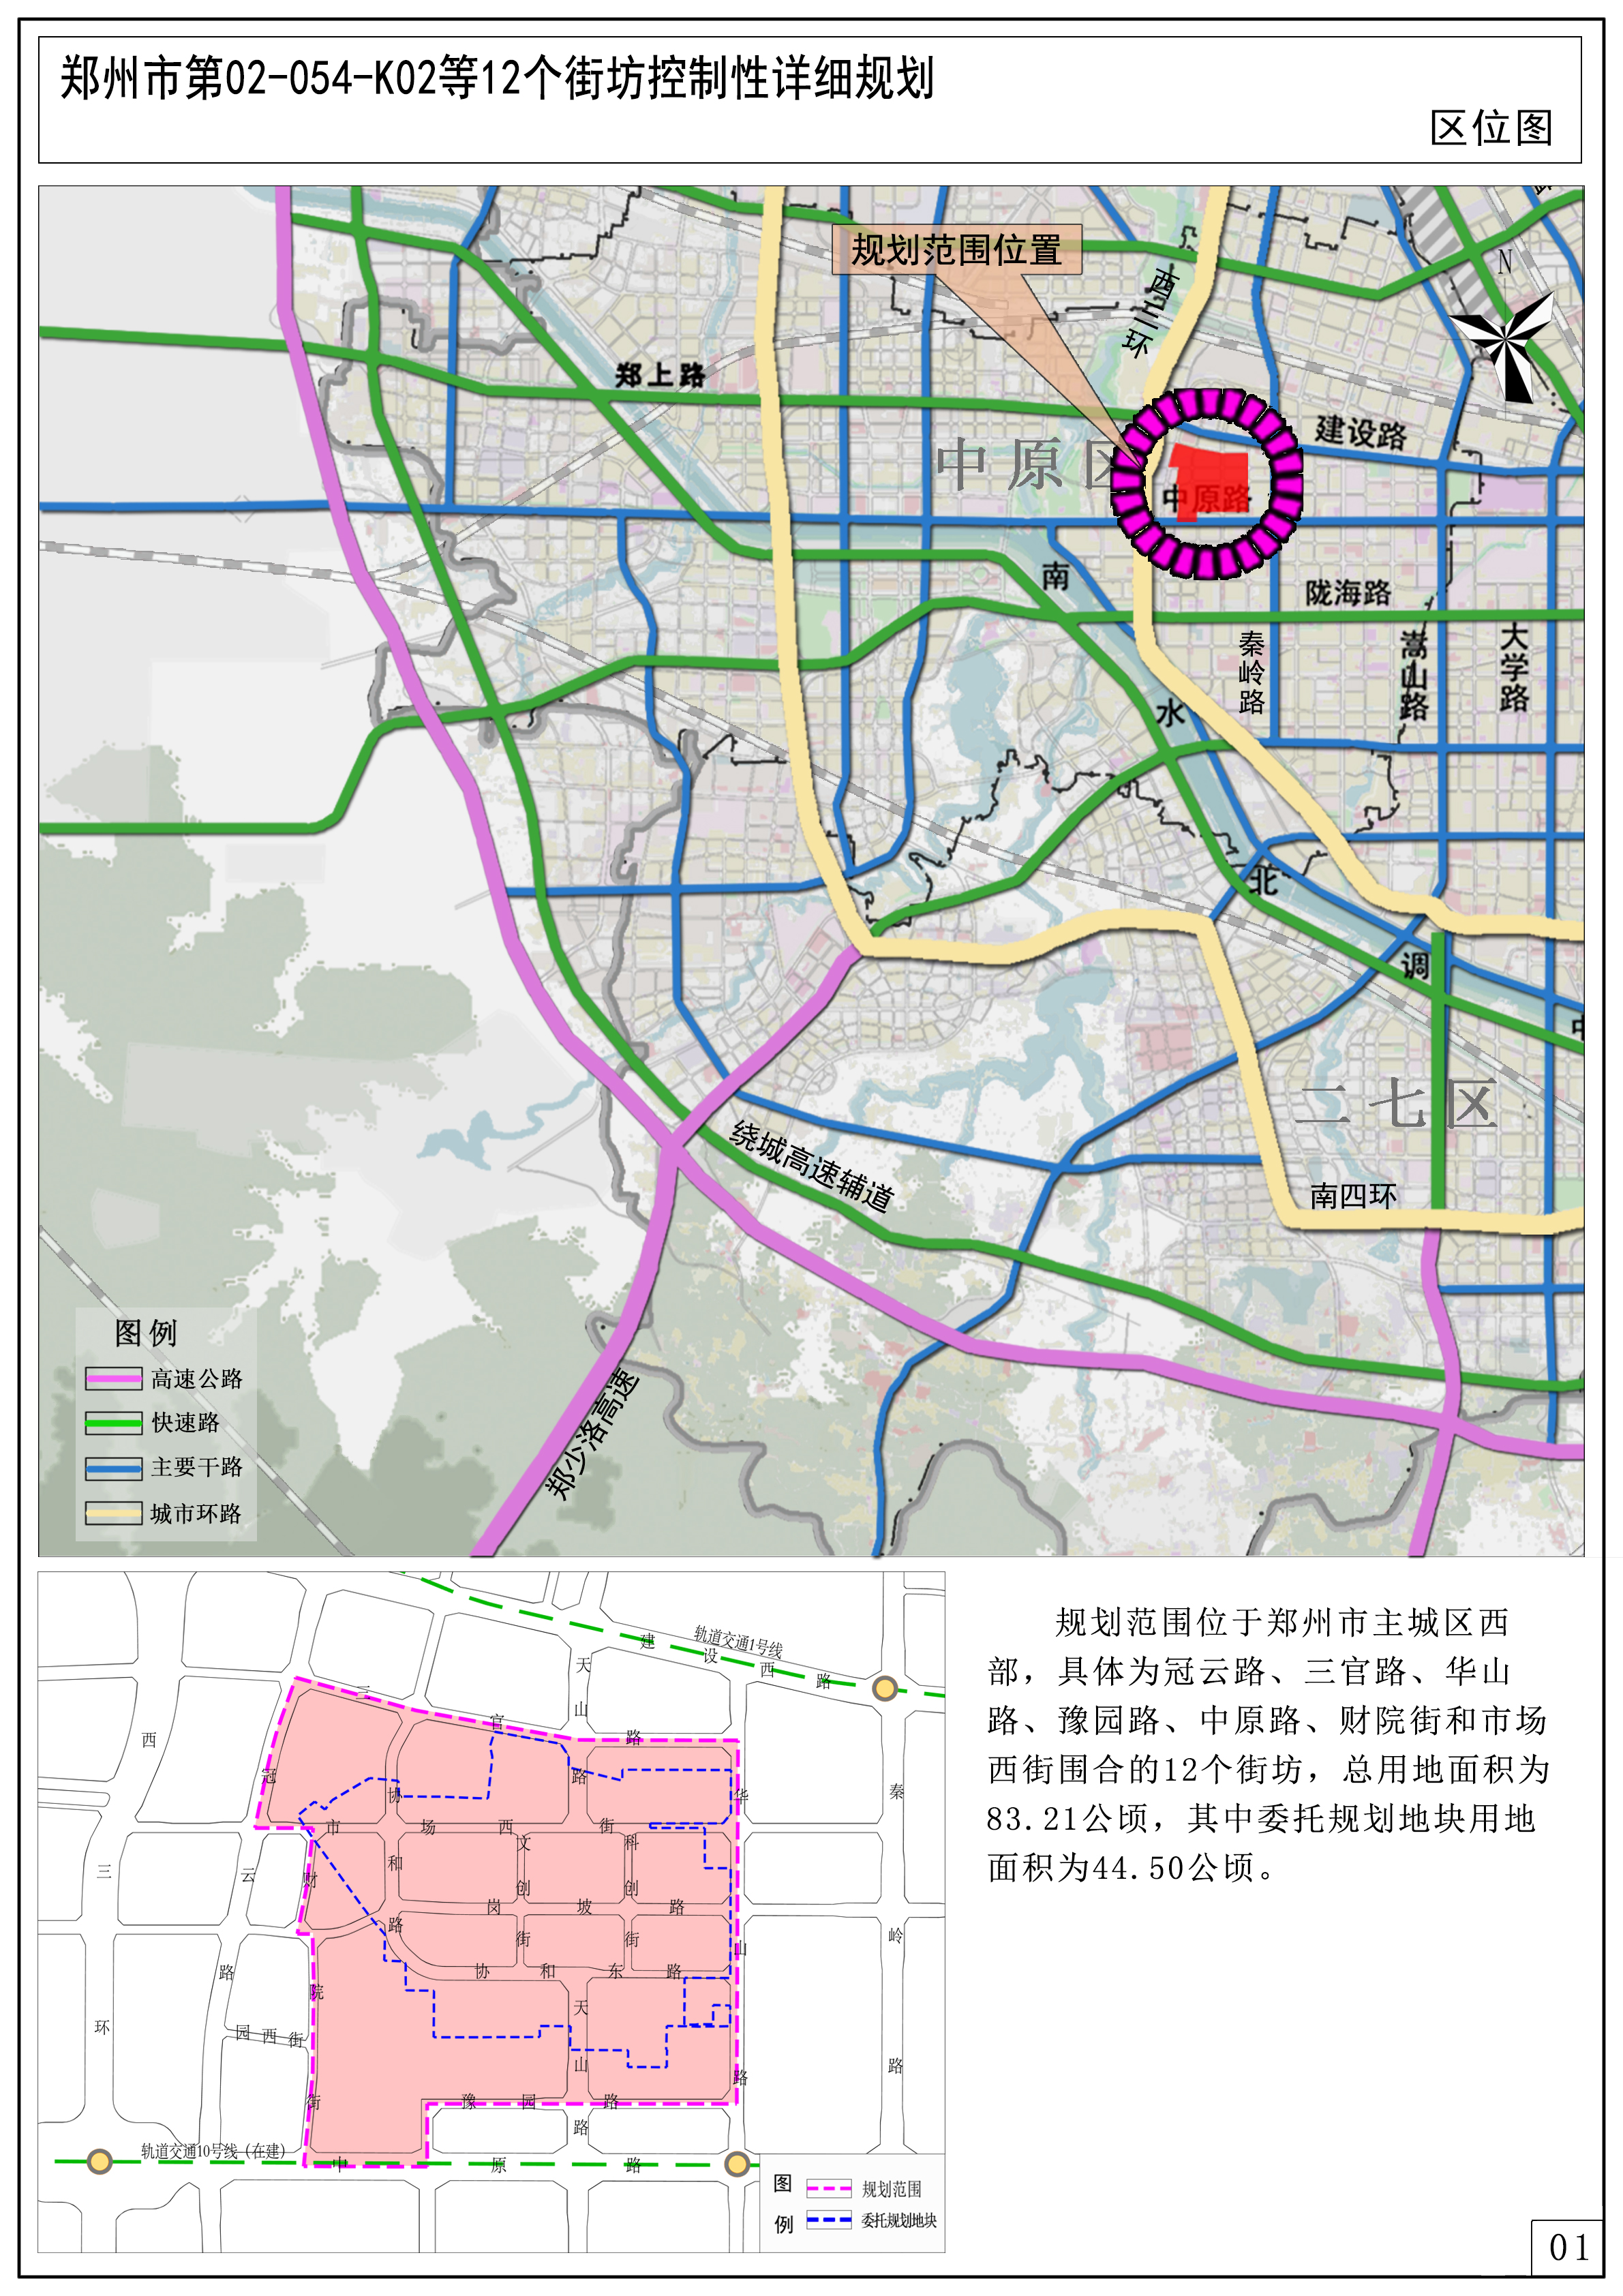 郑州市第02-054-K02等12个街坊控制性详细规划